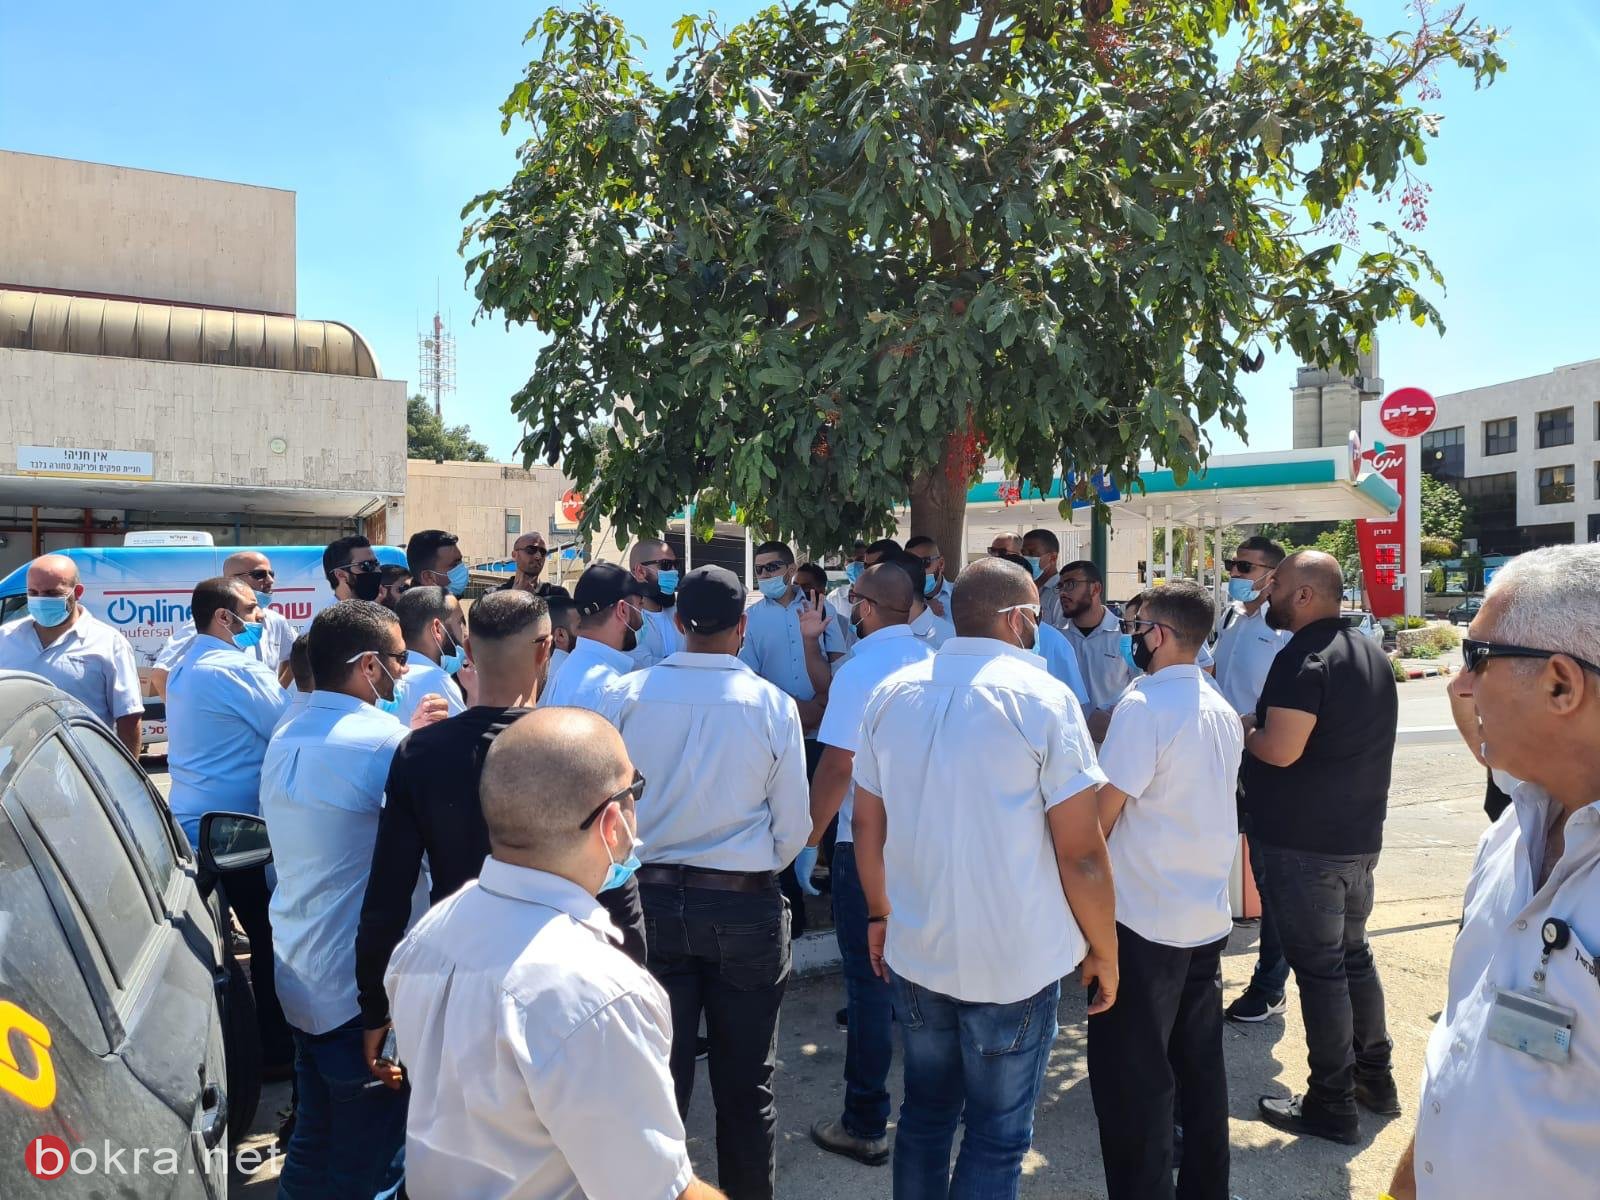 سائقو شركة "متروبولين" العرب يتظاهرون أمام مكاتب الشرطة اعتراضًا على الشروط المجحفة-3